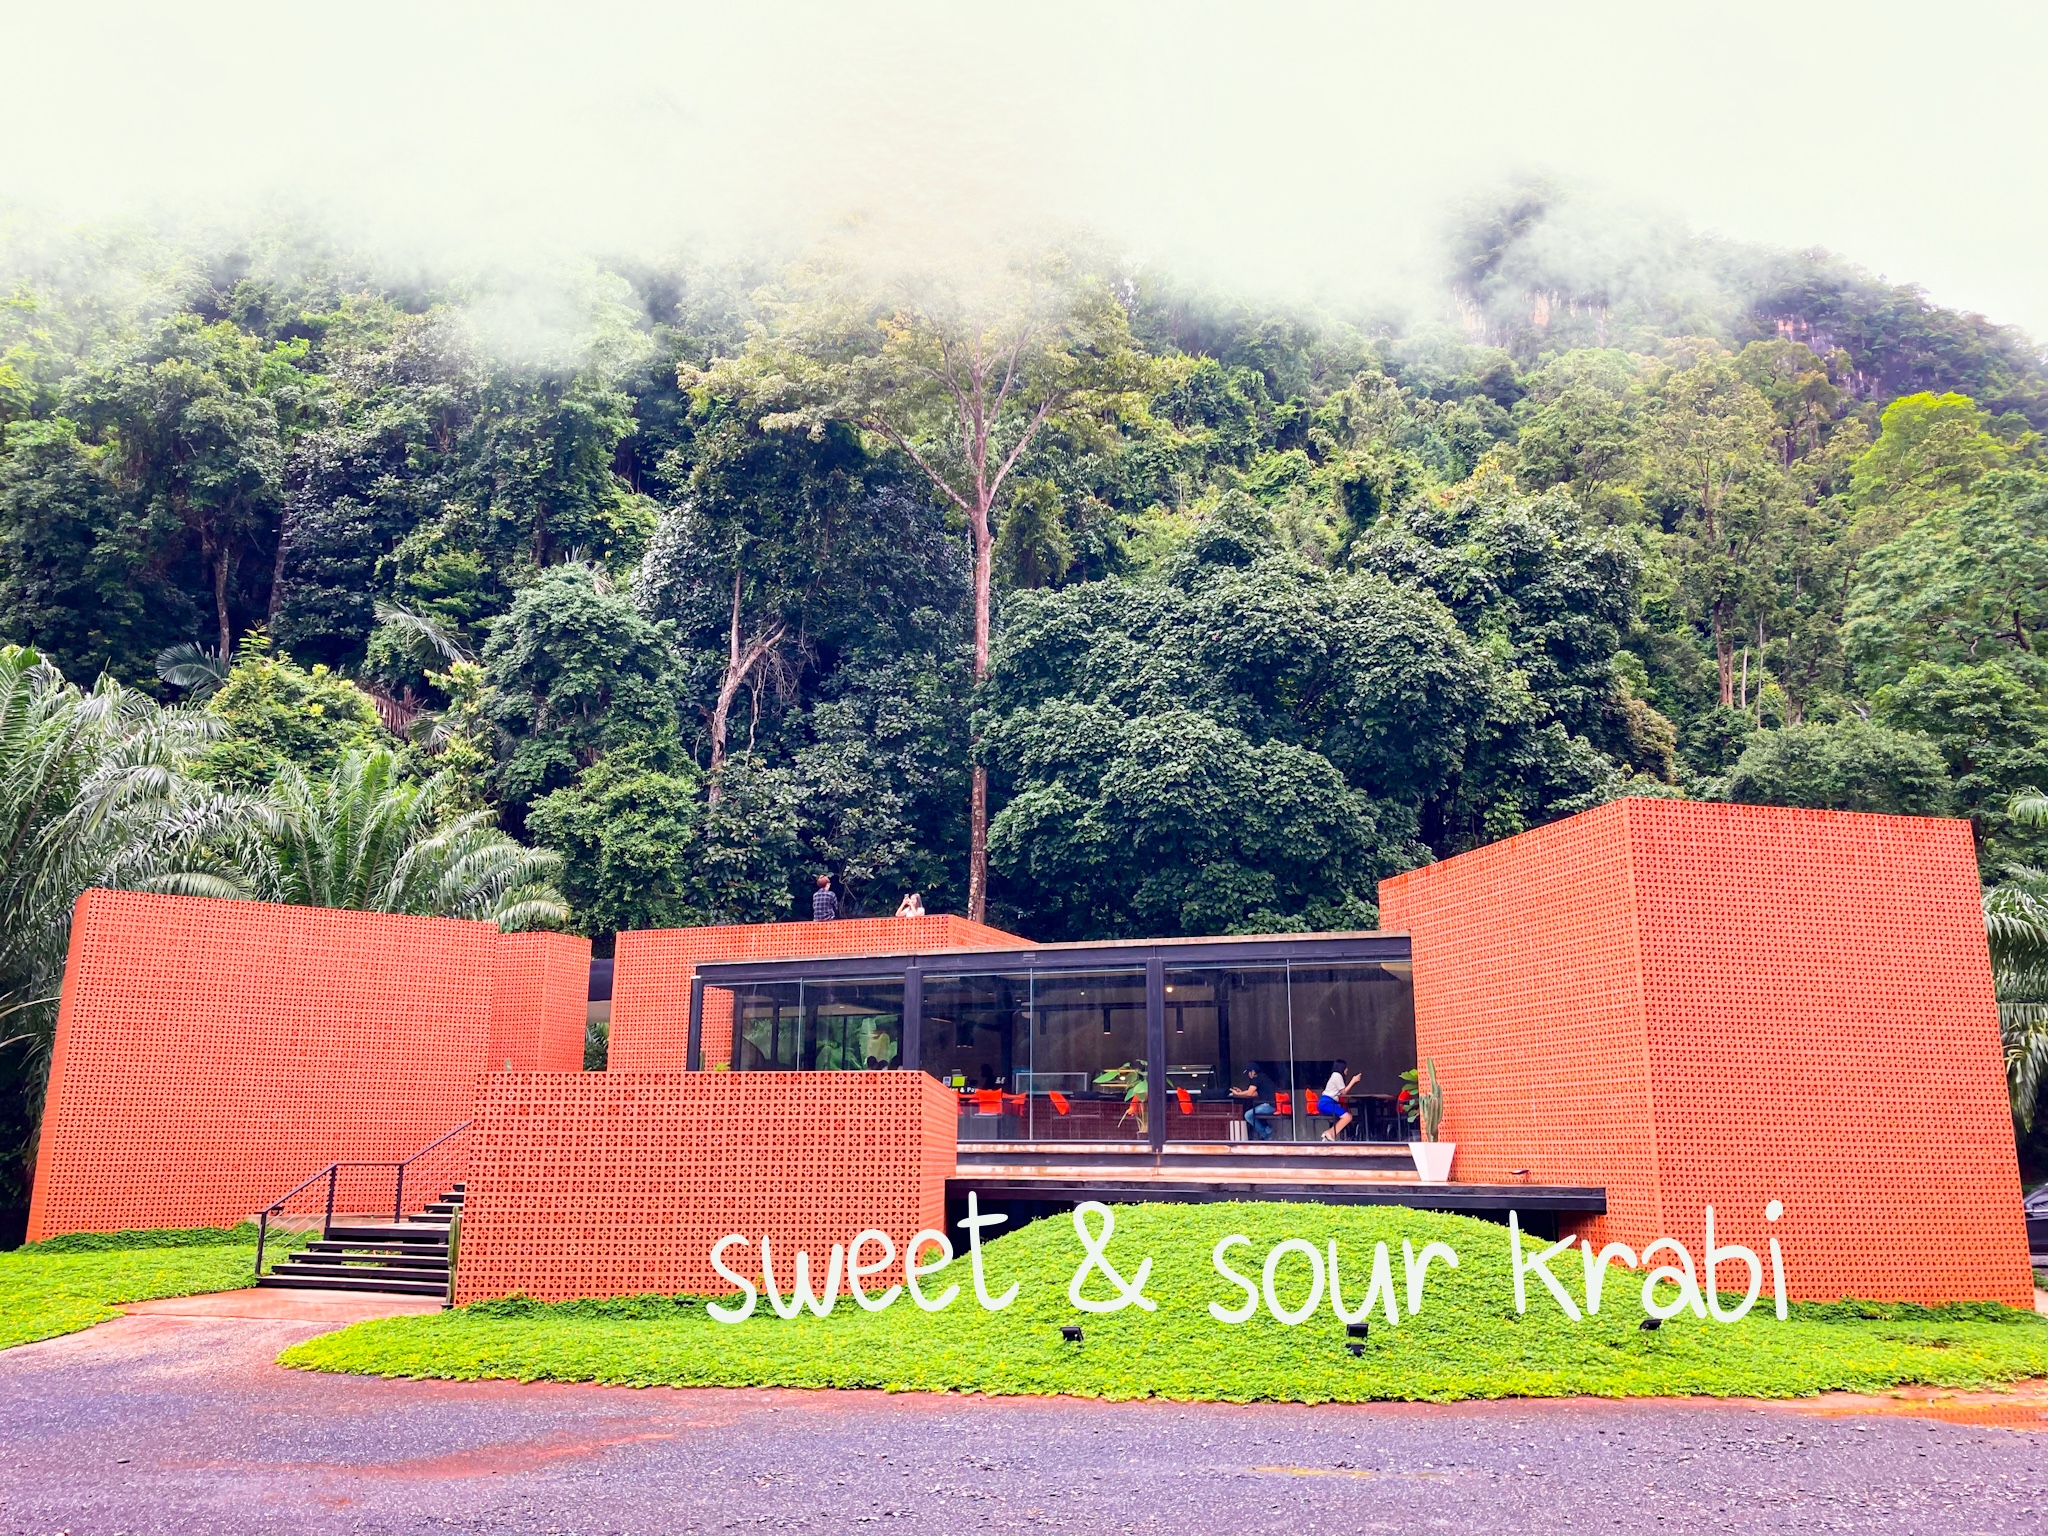 รูปภาพของ Sweet & Sour Krabi สวีท แอนด์ ซาว ค่าเฟ่อิฐสีส้มกลางหุบเขา